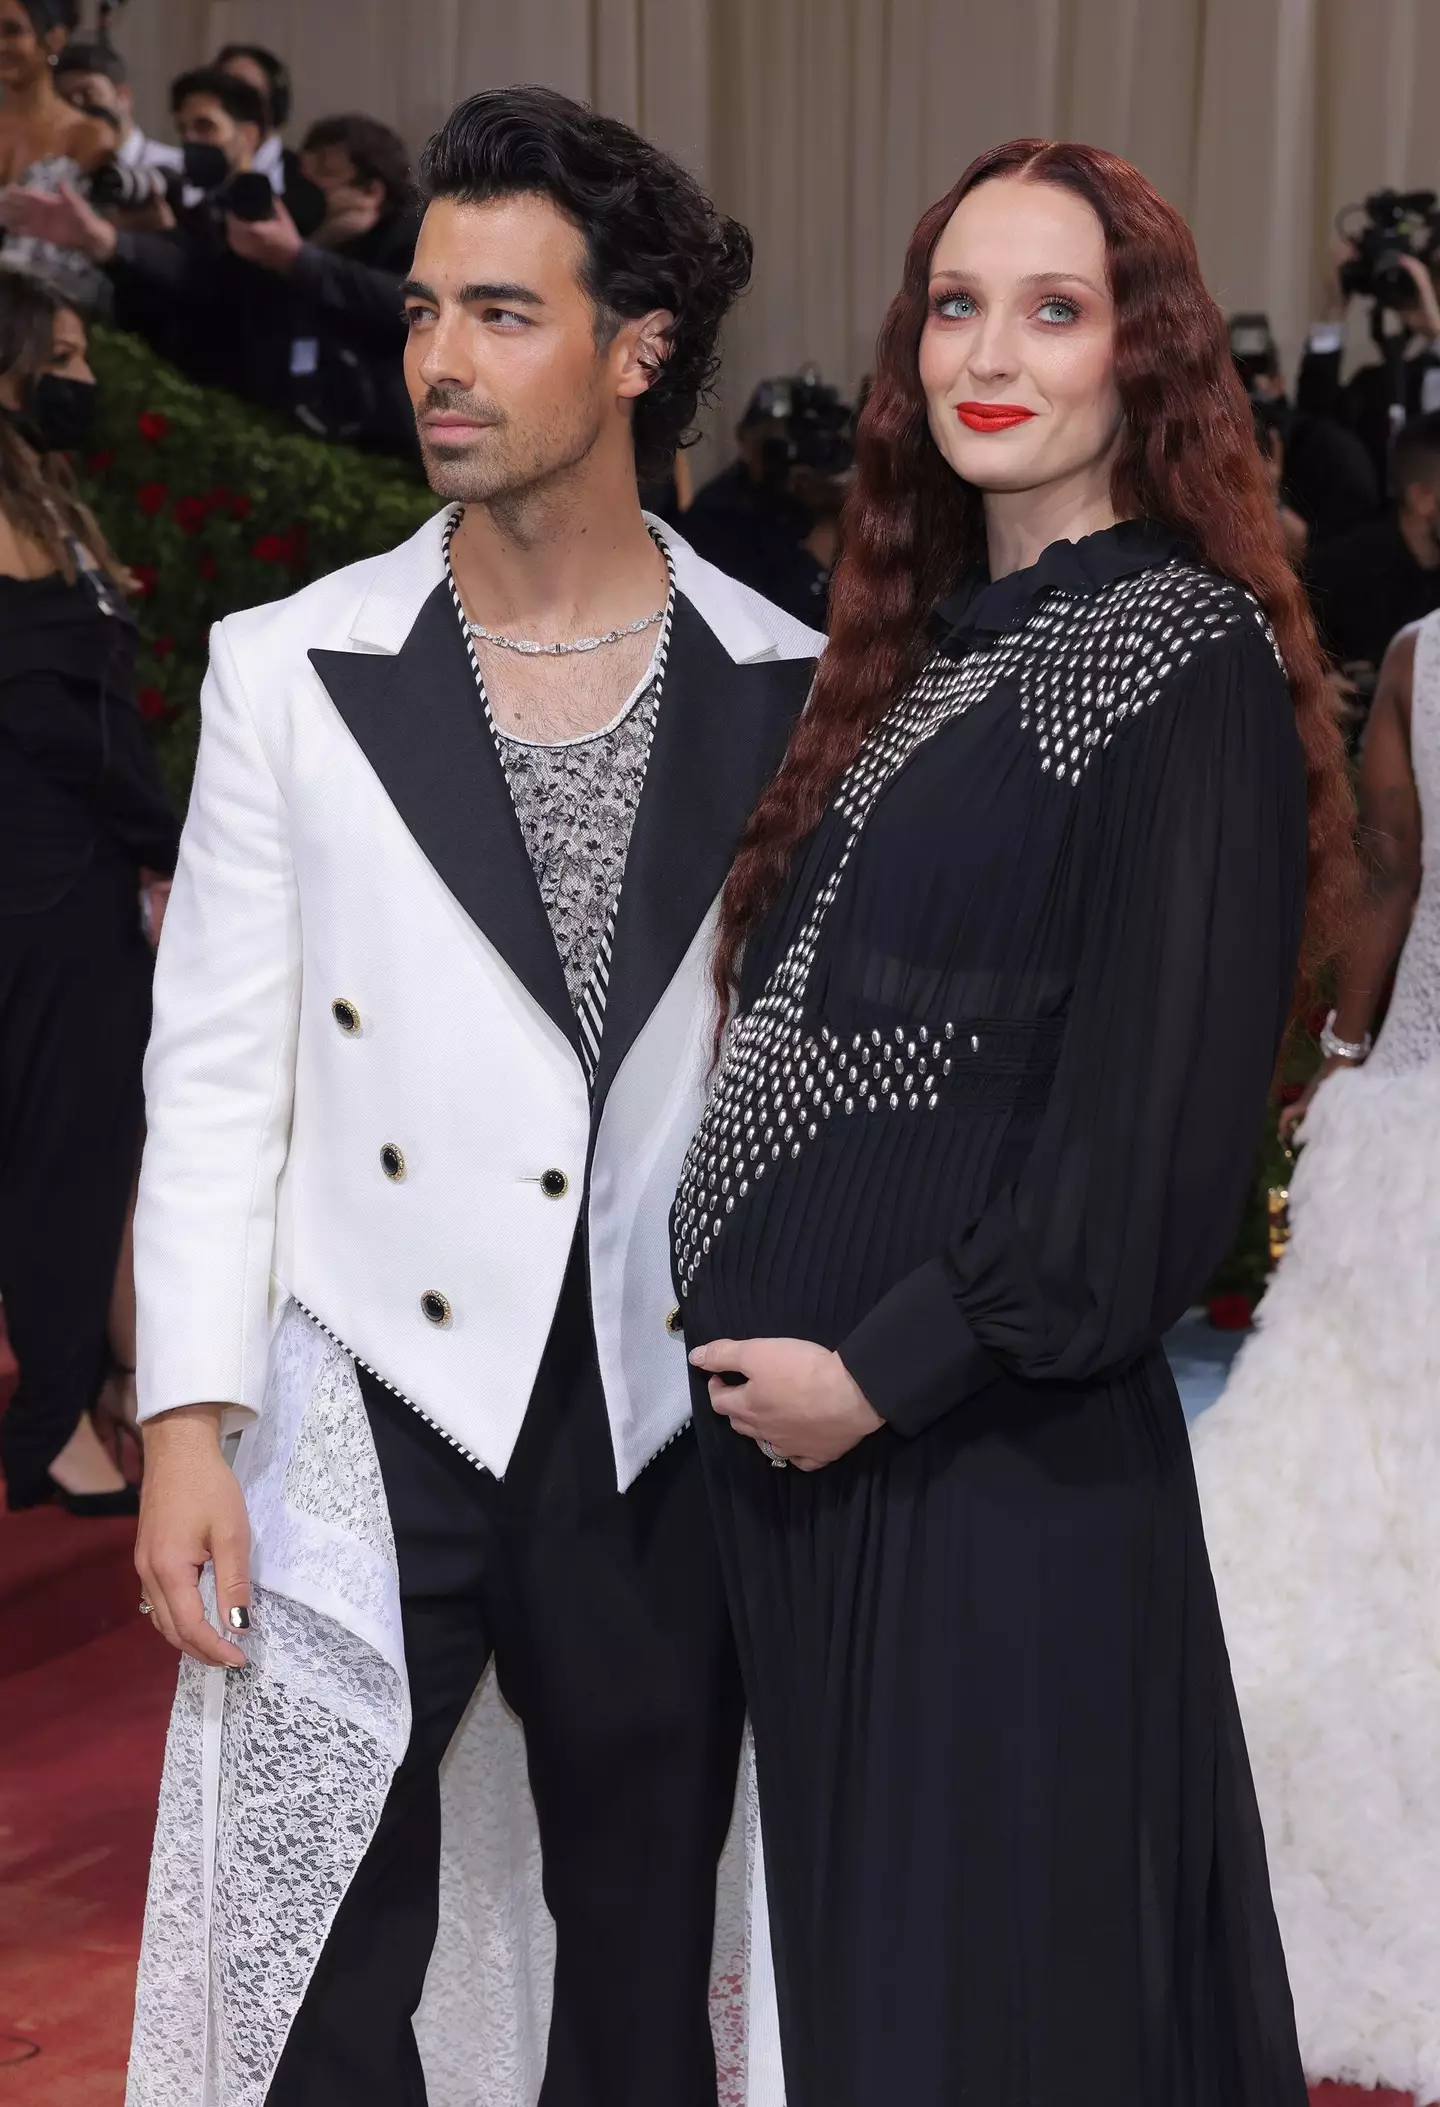 Joe Jonas and Sophie Turner at the 2022 Met Gala.